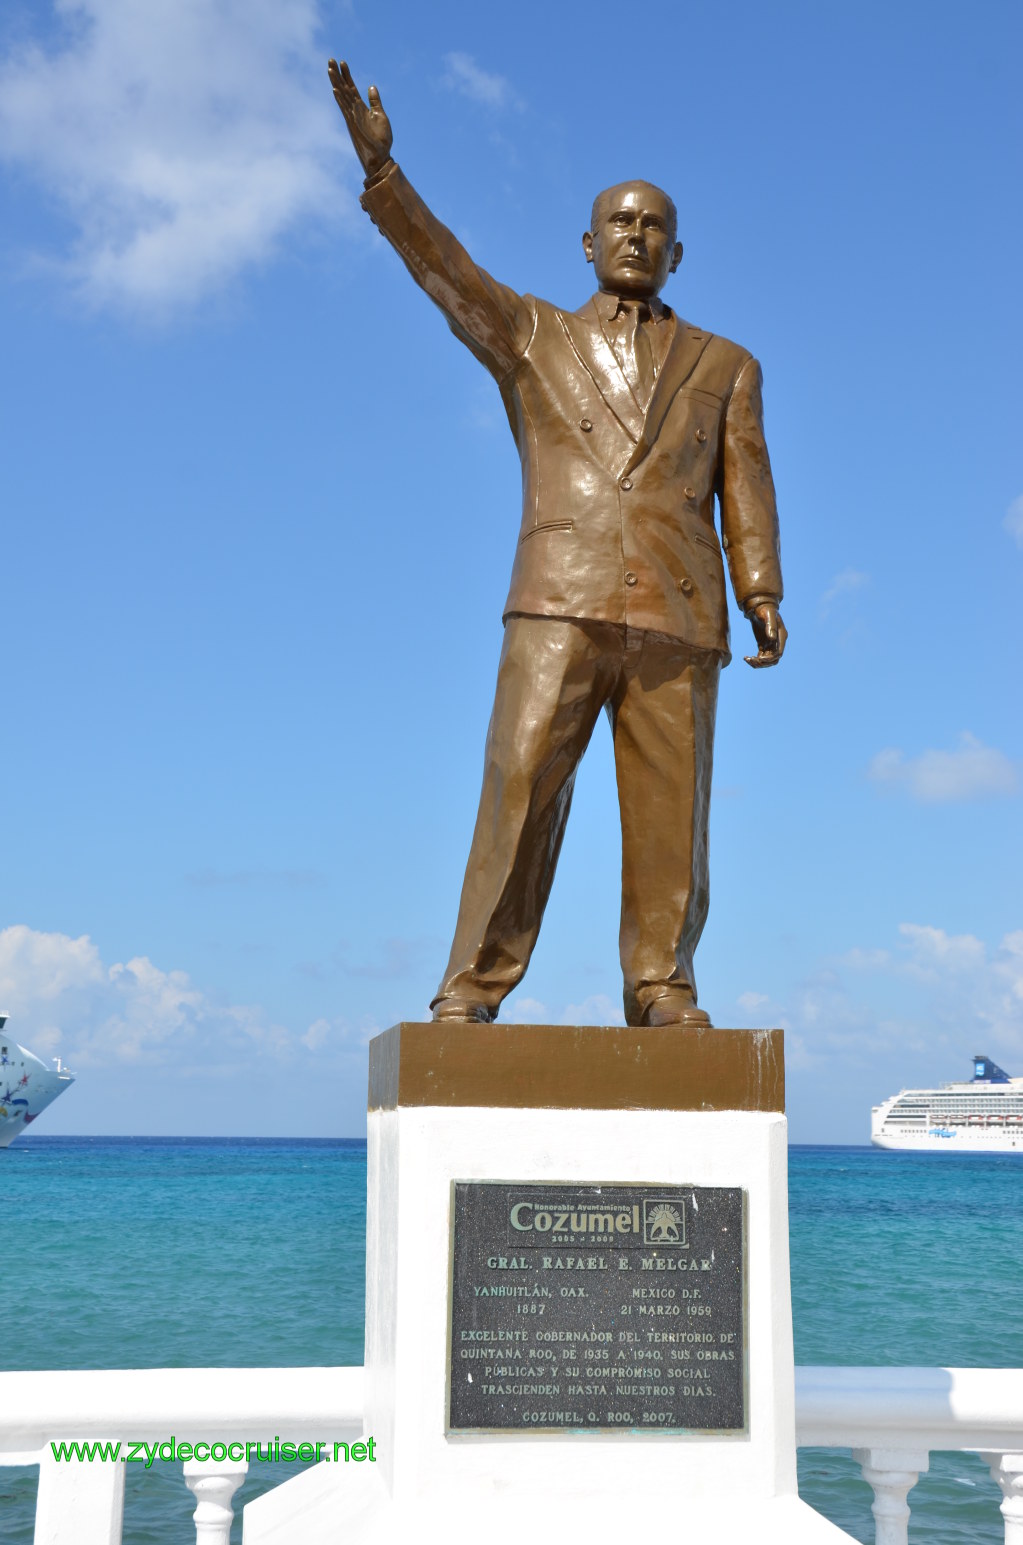 063: Carnival Conquest, Nov 18. 2011, Cozumel, Rafael E. Melgar statue